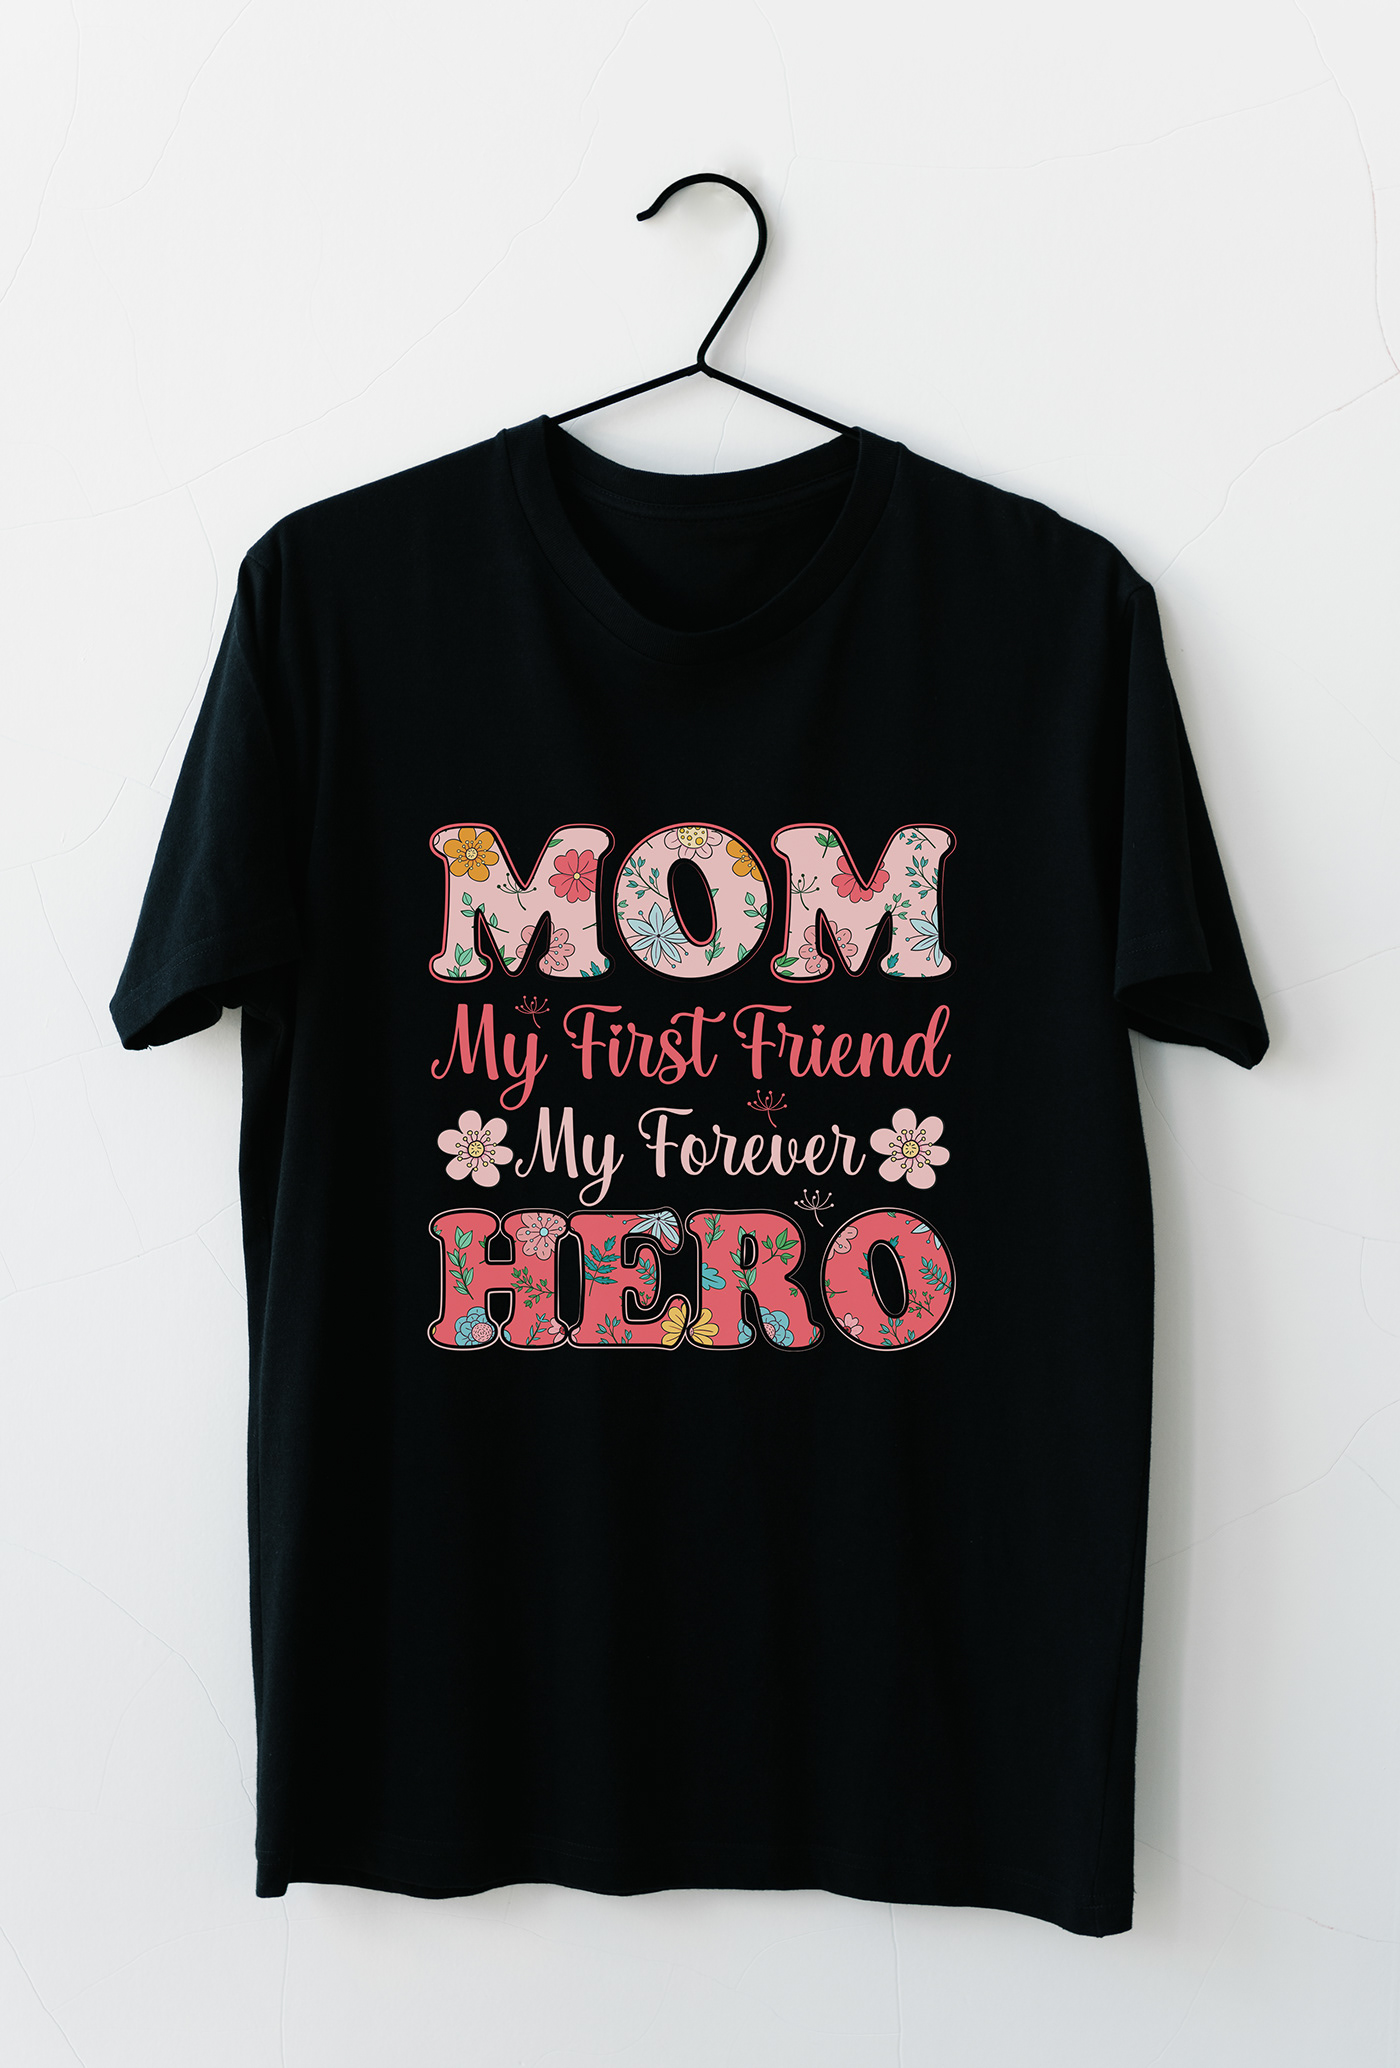 t-shirt Tshirt Design apparel tshirt T-Shirt Design typography   mom mom t-shirt design mothers day t-shirt for mom